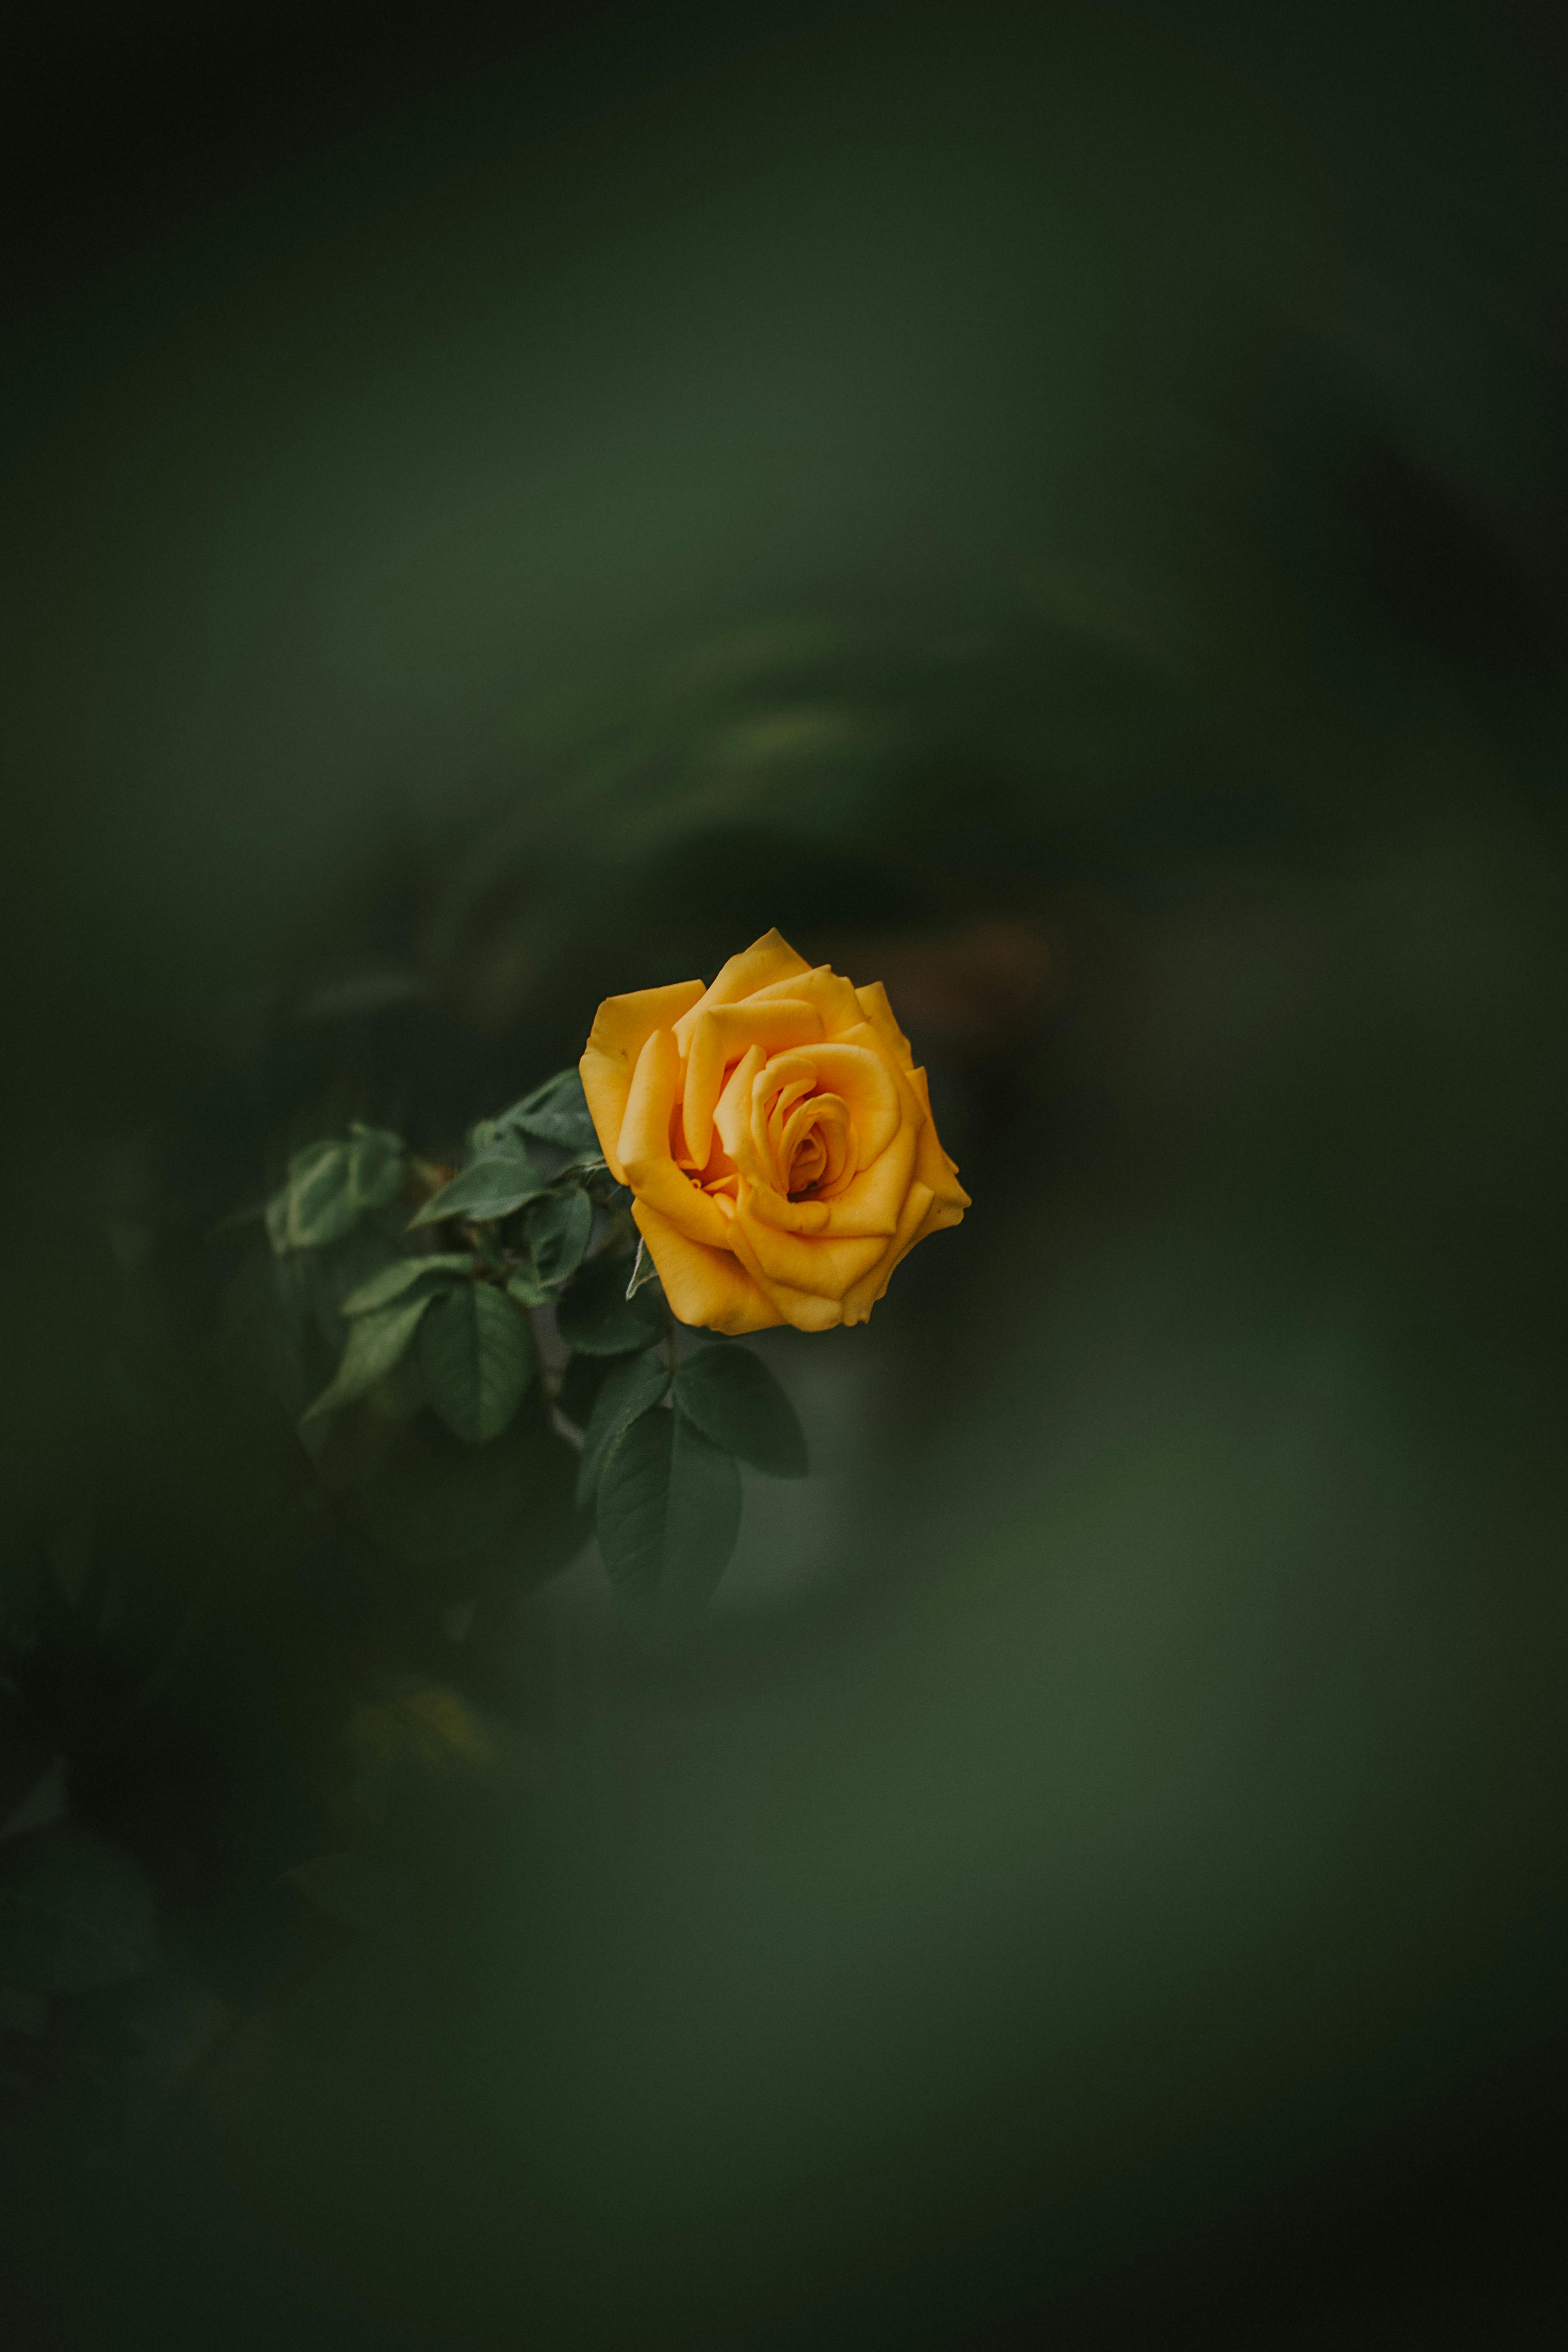 wallpaper of yellow roses